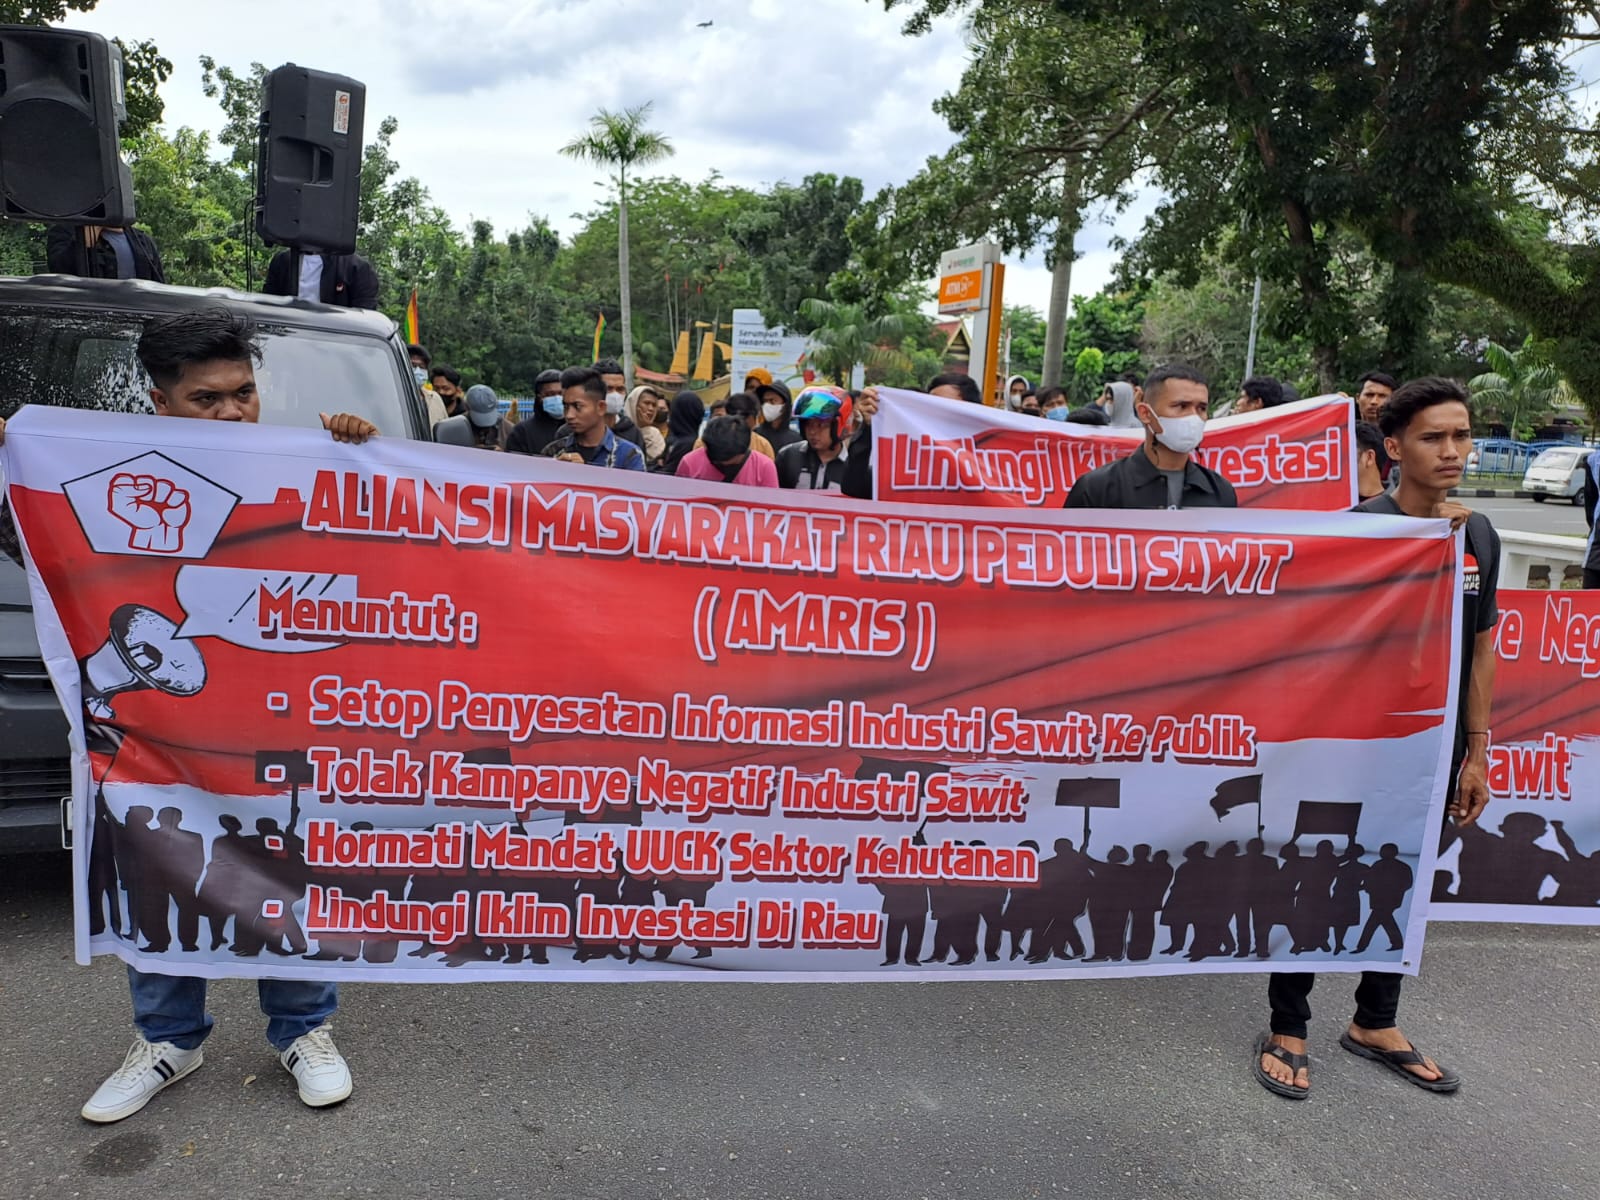 Puluhan Massa AMRIS Unjuk Rasa di Kantor DPRD Riau, Minta Stop Penyesatan Informasi Sawit ke Publik